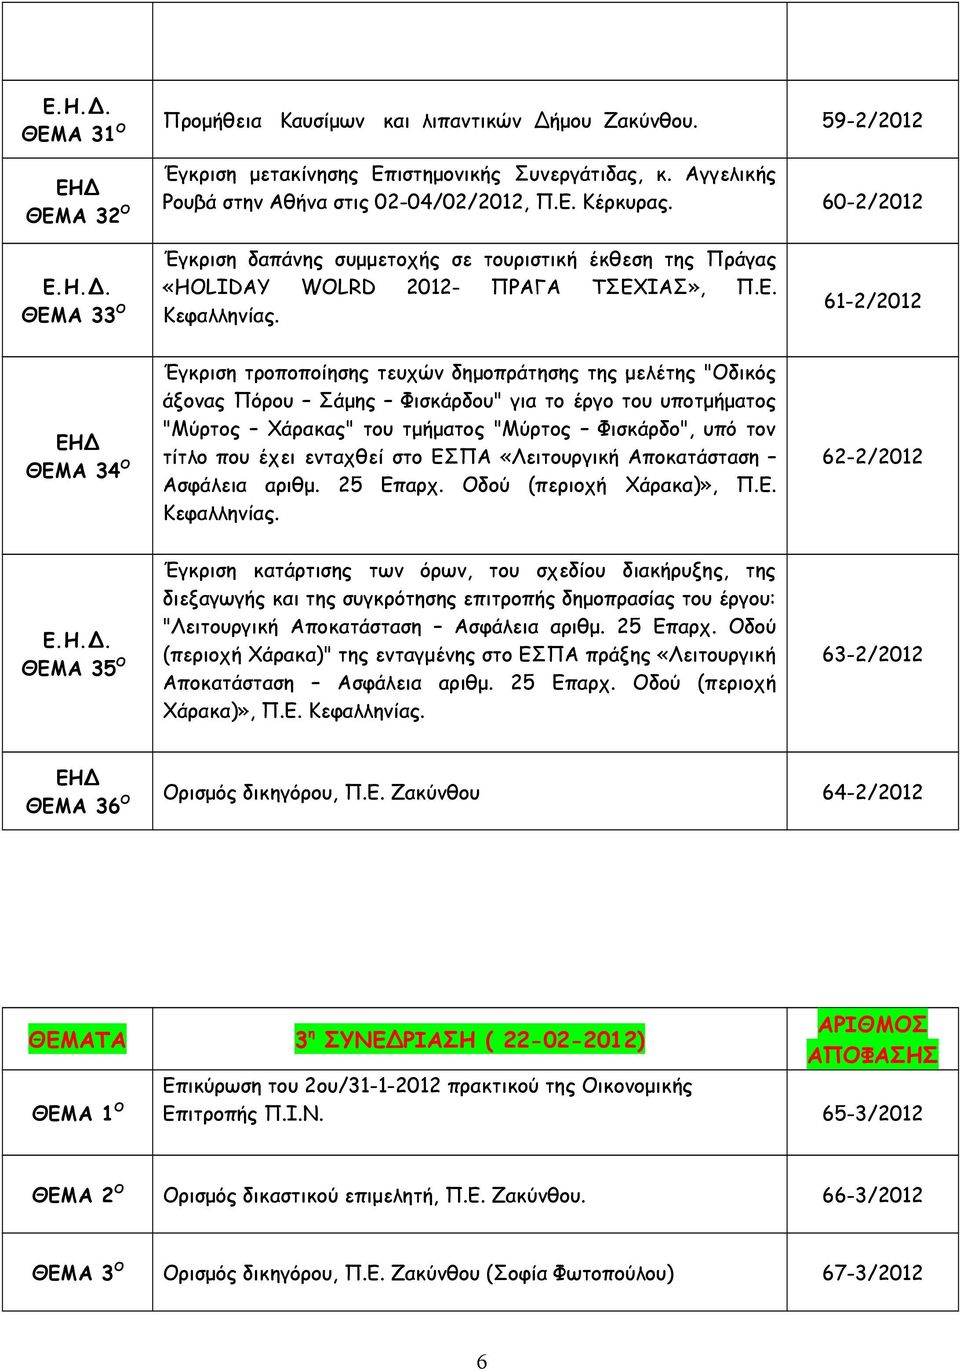 61-2/2012 ΘΕΜΑ 34 Ο Έγκριση τροποποίησης τευχών δημοπράτησης της μελέτης "Οδικός άξονας Πόρου Σάμης Φισκάρδου" για το έργο του υποτμήματος "Μύρτος Χάρακας" του τμήματος "Μύρτος Φισκάρδο", υπό τον